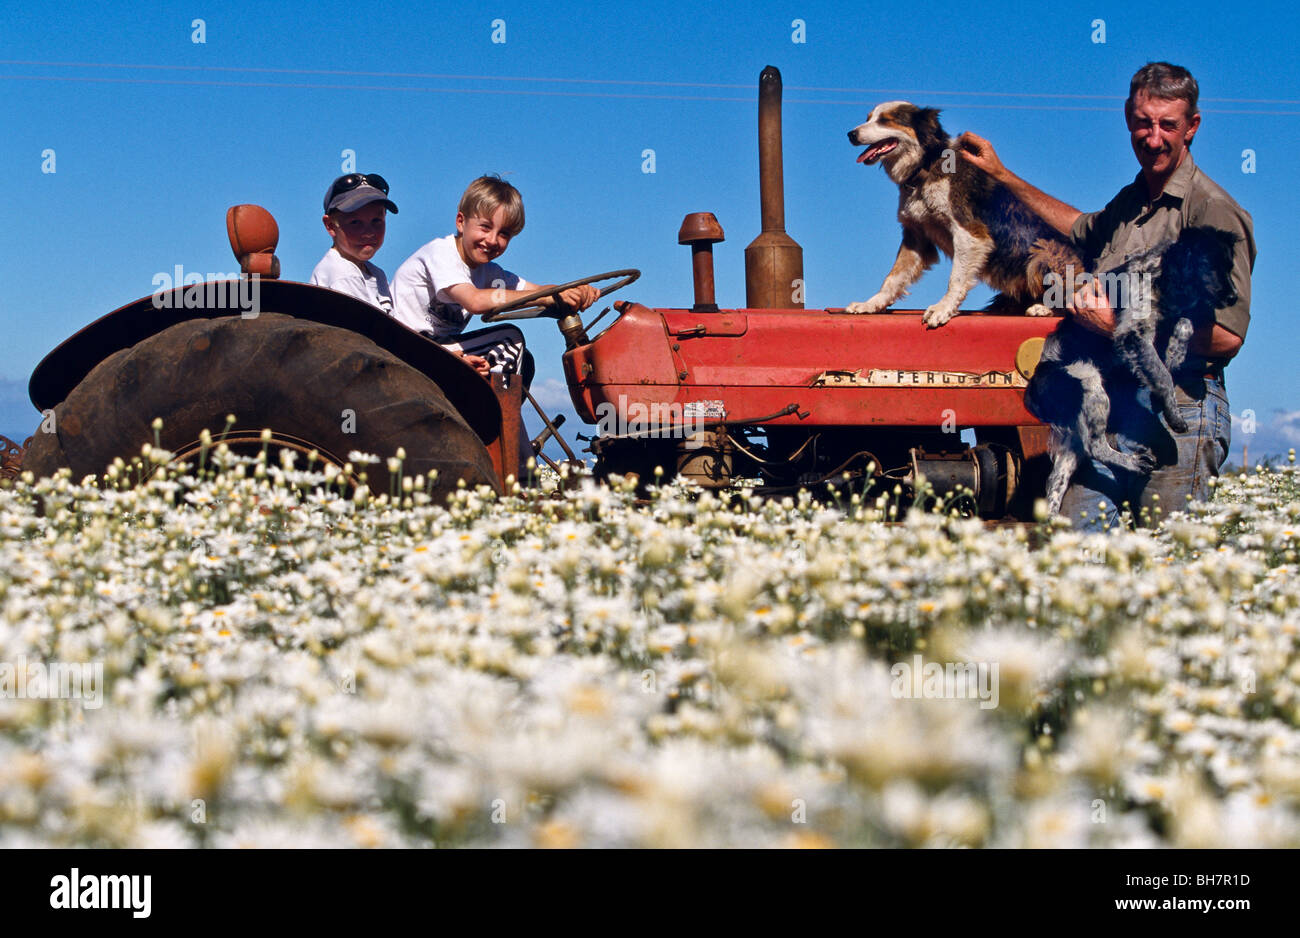 Pyrethrum grower & family, Australia Stock Photo